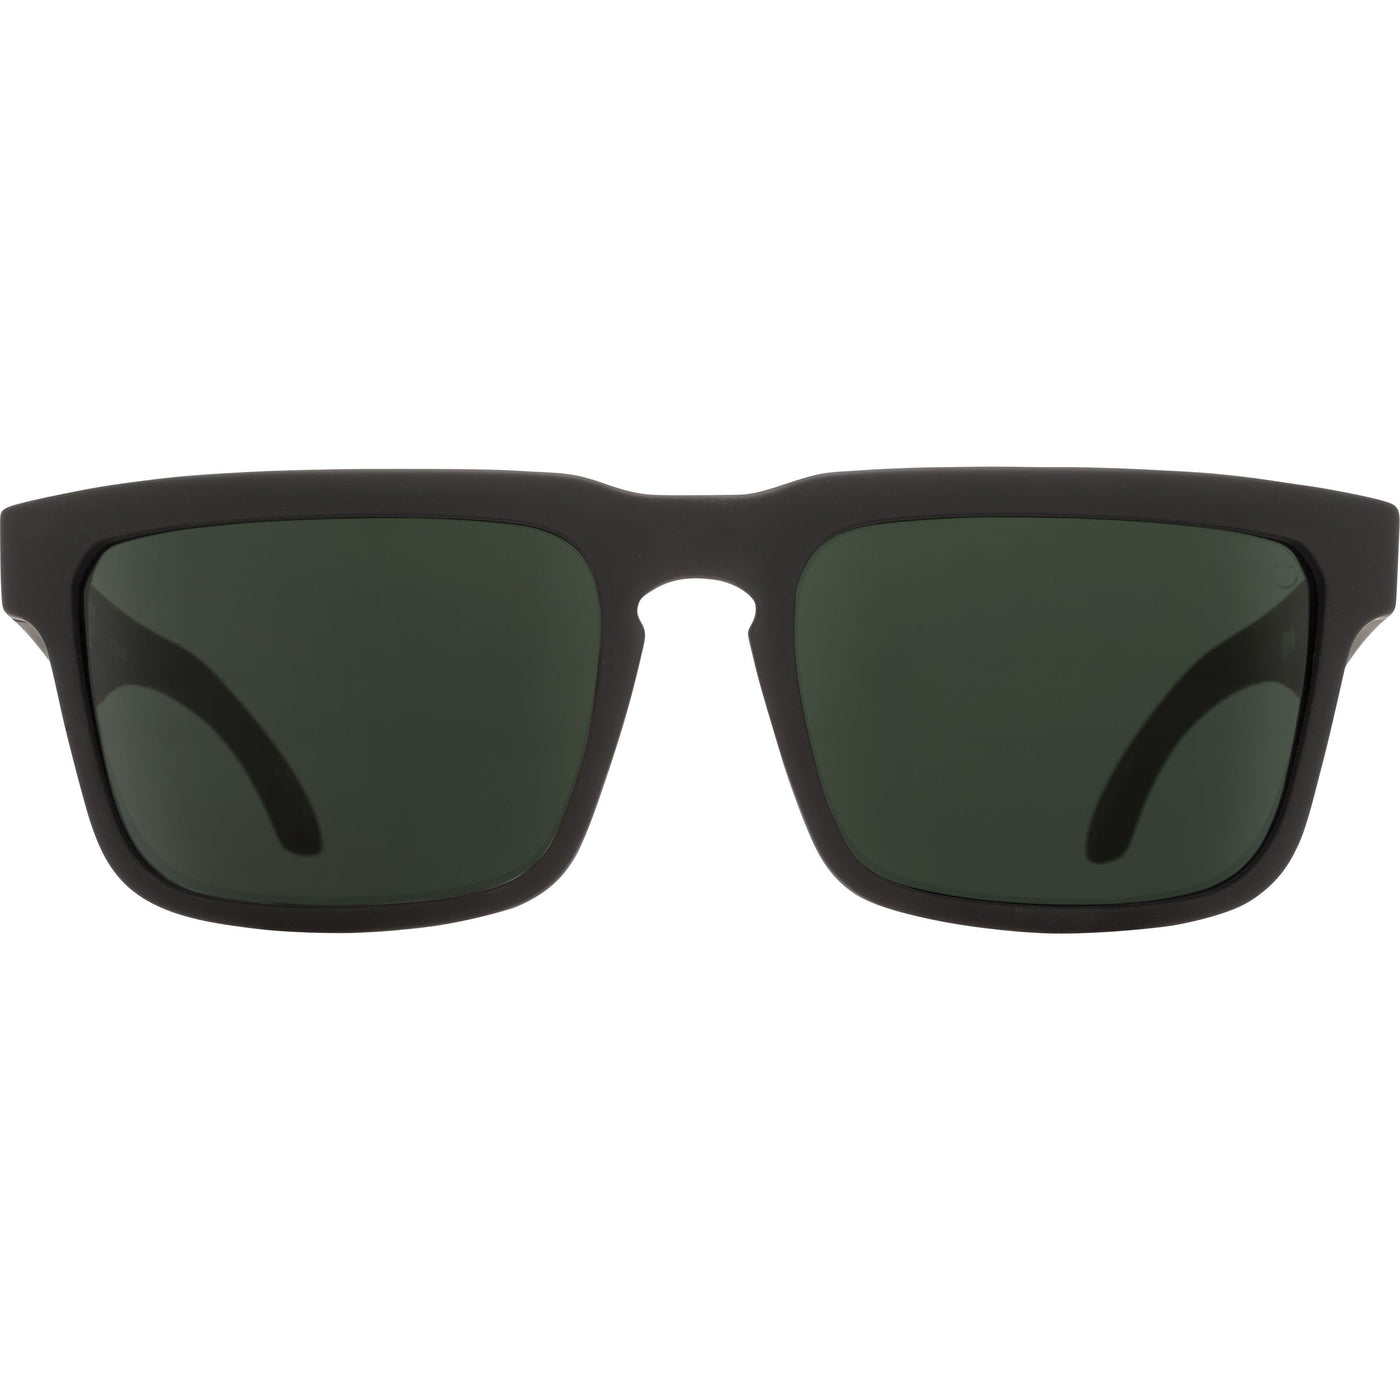 classic frame sunglasses - spy helm